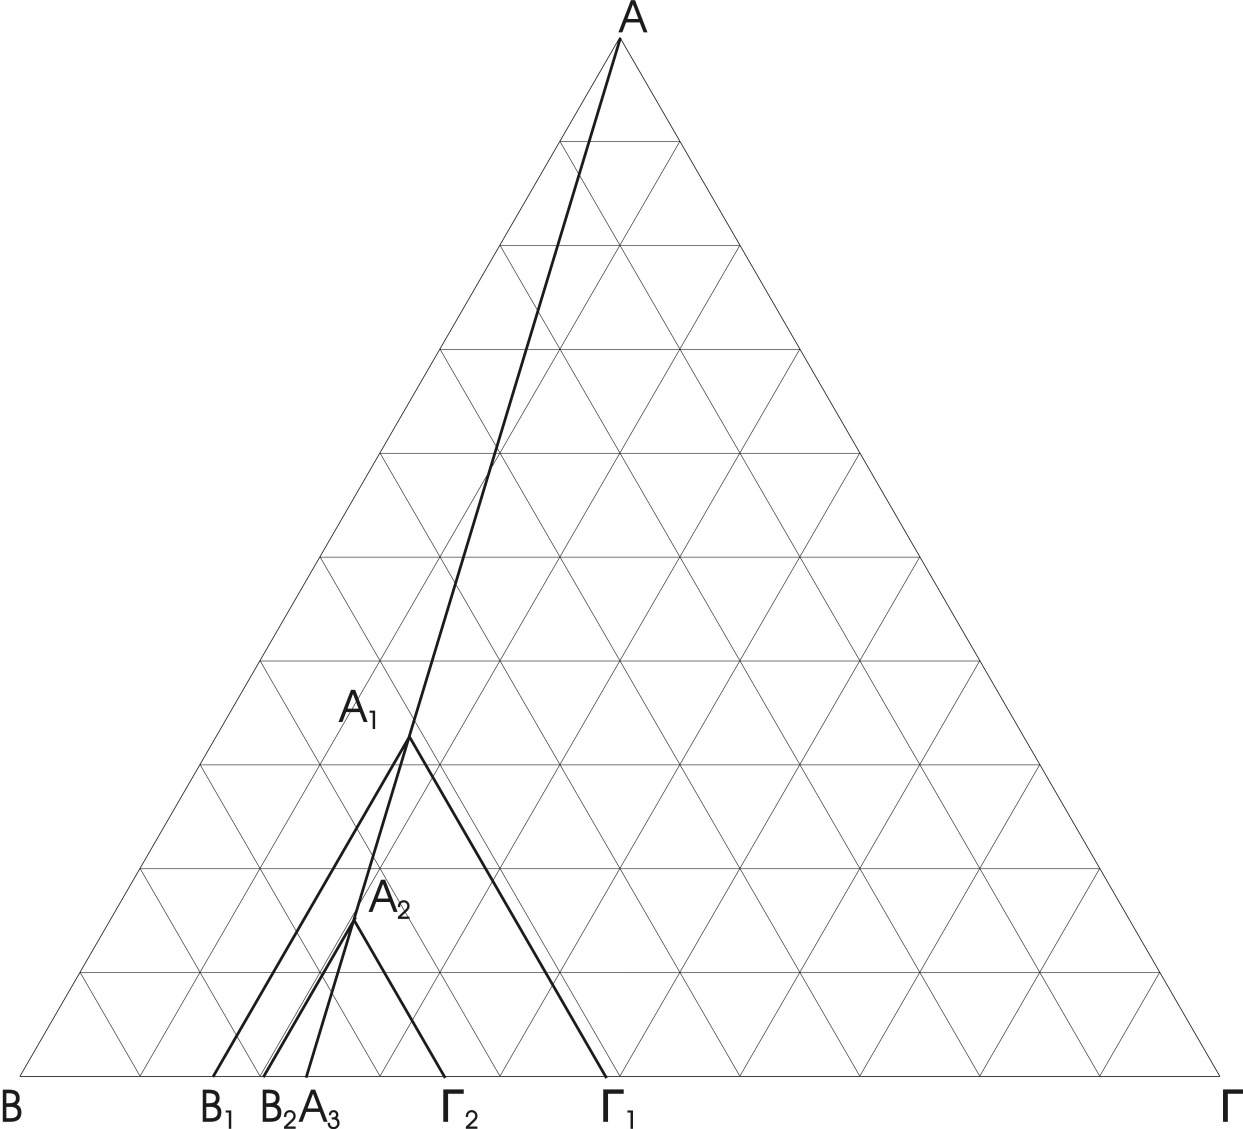 Σχήµα 2. Τριγωνικό διάγραµµα φάσεων που παριστά την σταθερή αναλογία των γραµµοµοριακών κλασµάτων x A, x B, x Γ, των συνθέσεων (σηµείων) επί της ΑΑ 3.